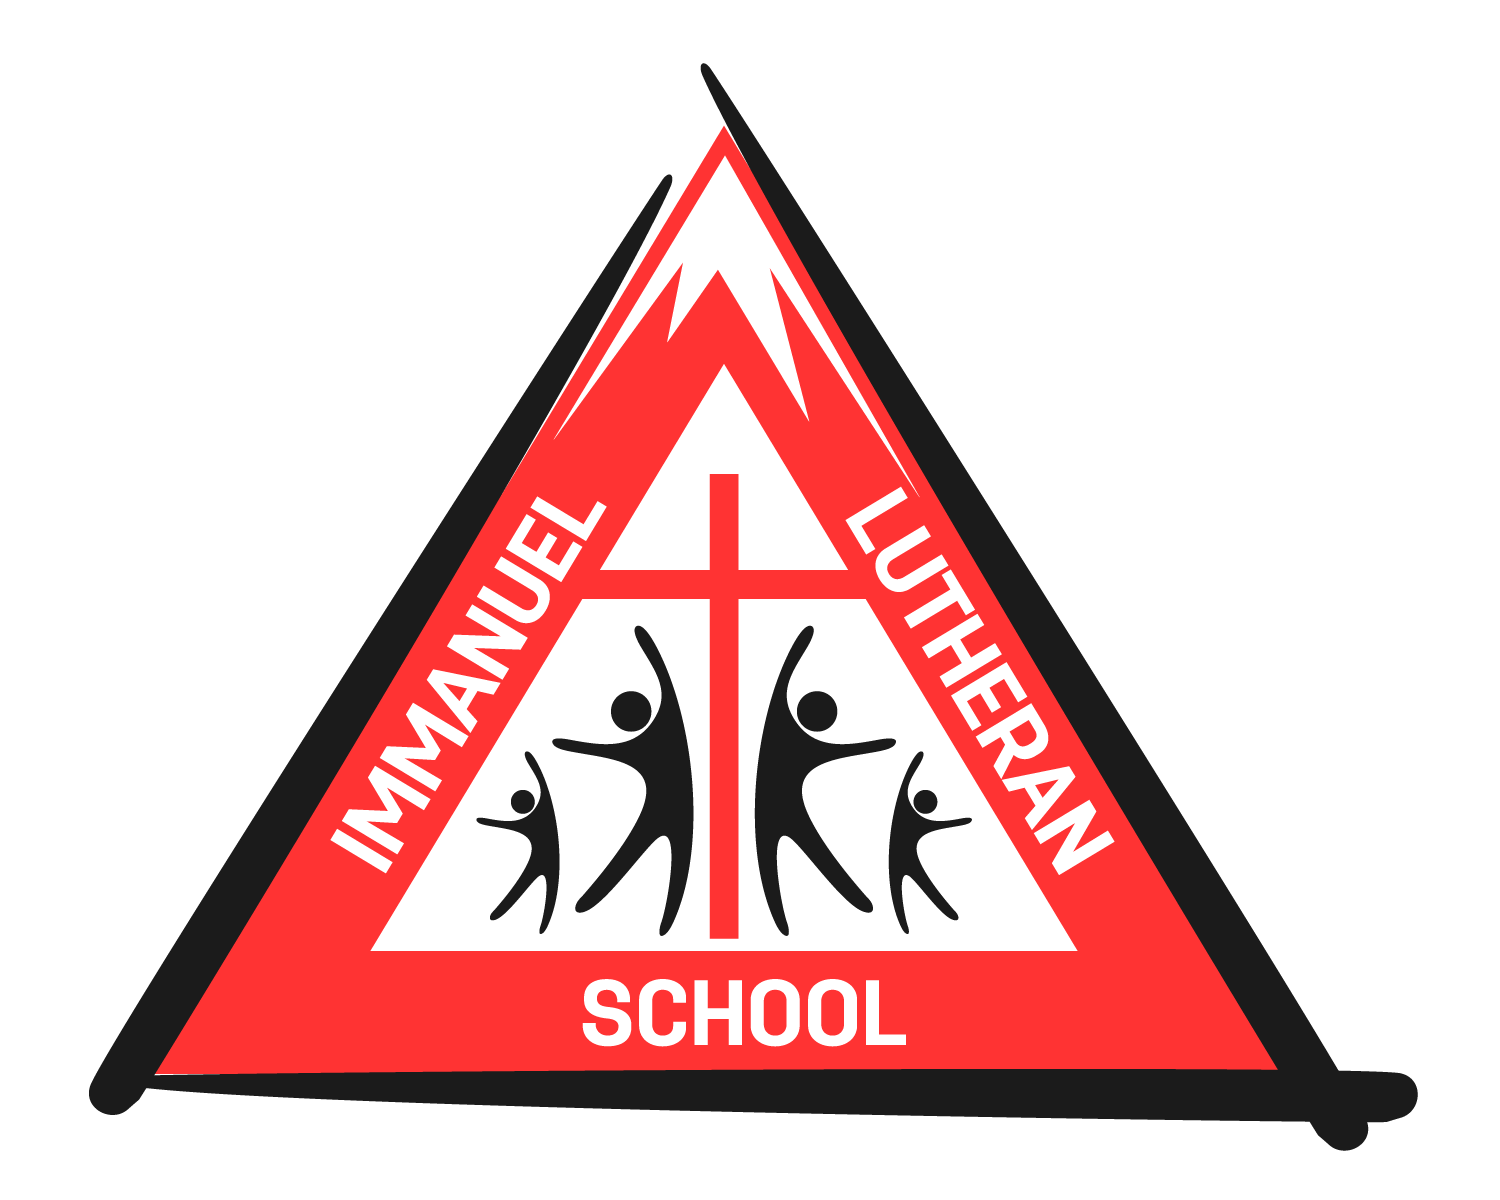 Immanuel Lutheran School - Medford, Wisconsin WELS Synod Church